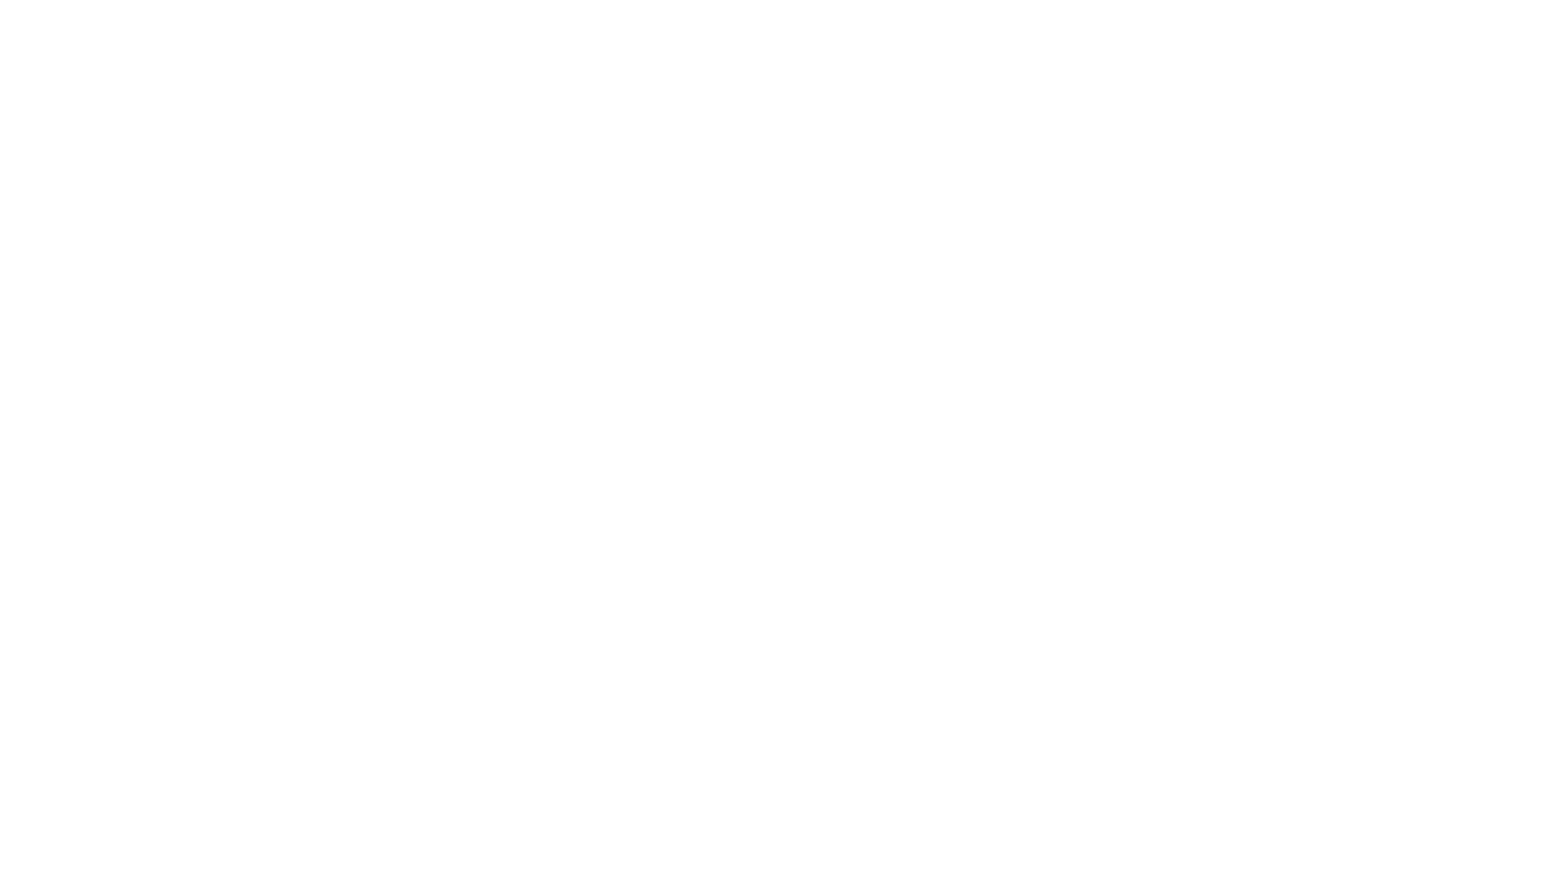 Vincerx Pharma logo for dark backgrounds (transparent PNG)